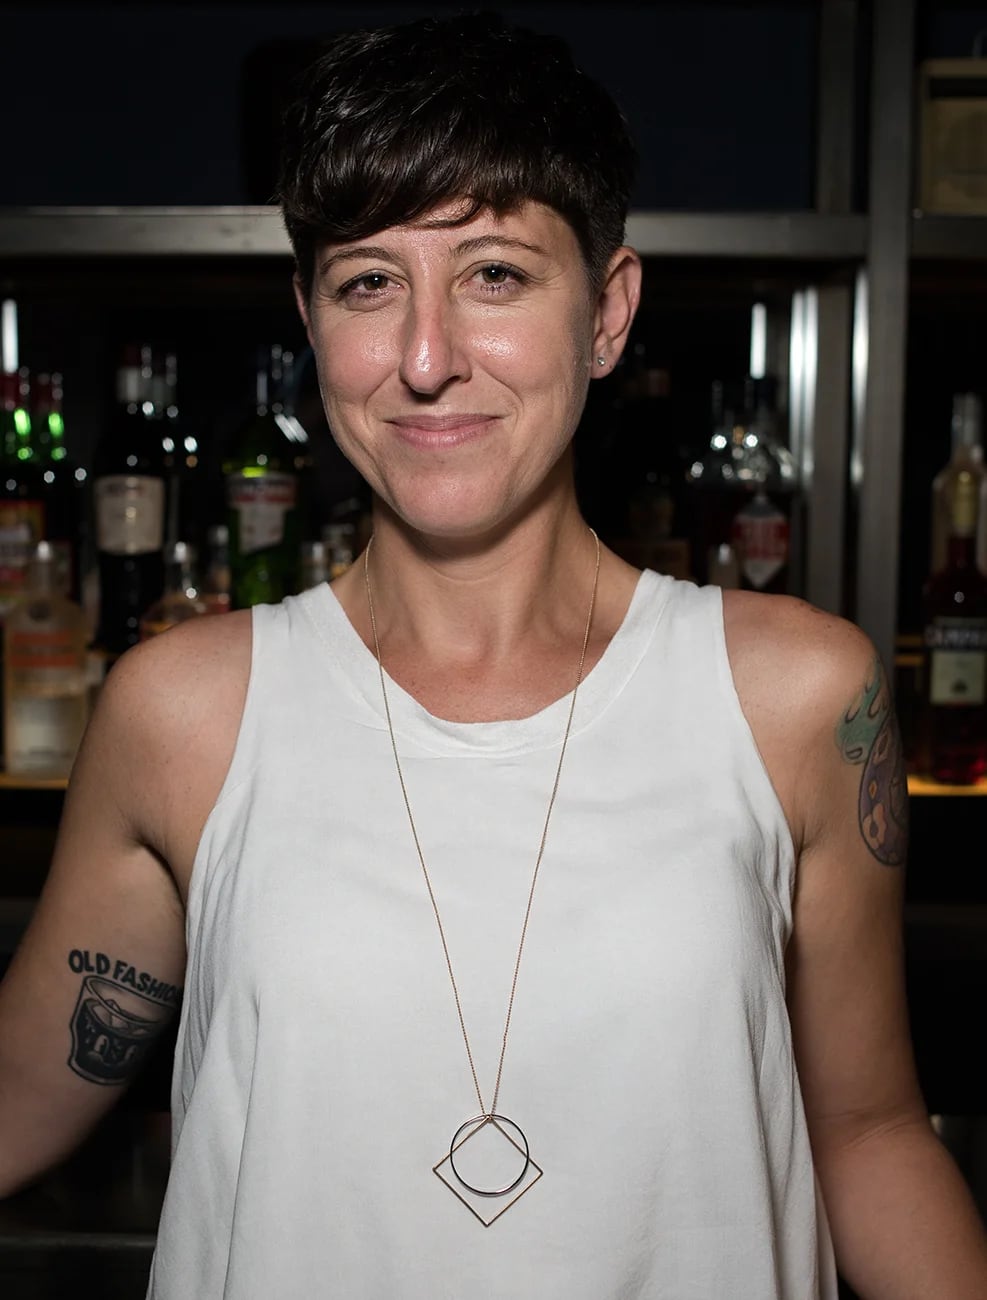 Inés De Los Santos, la bartender que soñó con ser reconocida mundialmente destacándose en la coctelería (Adrián Escandar)